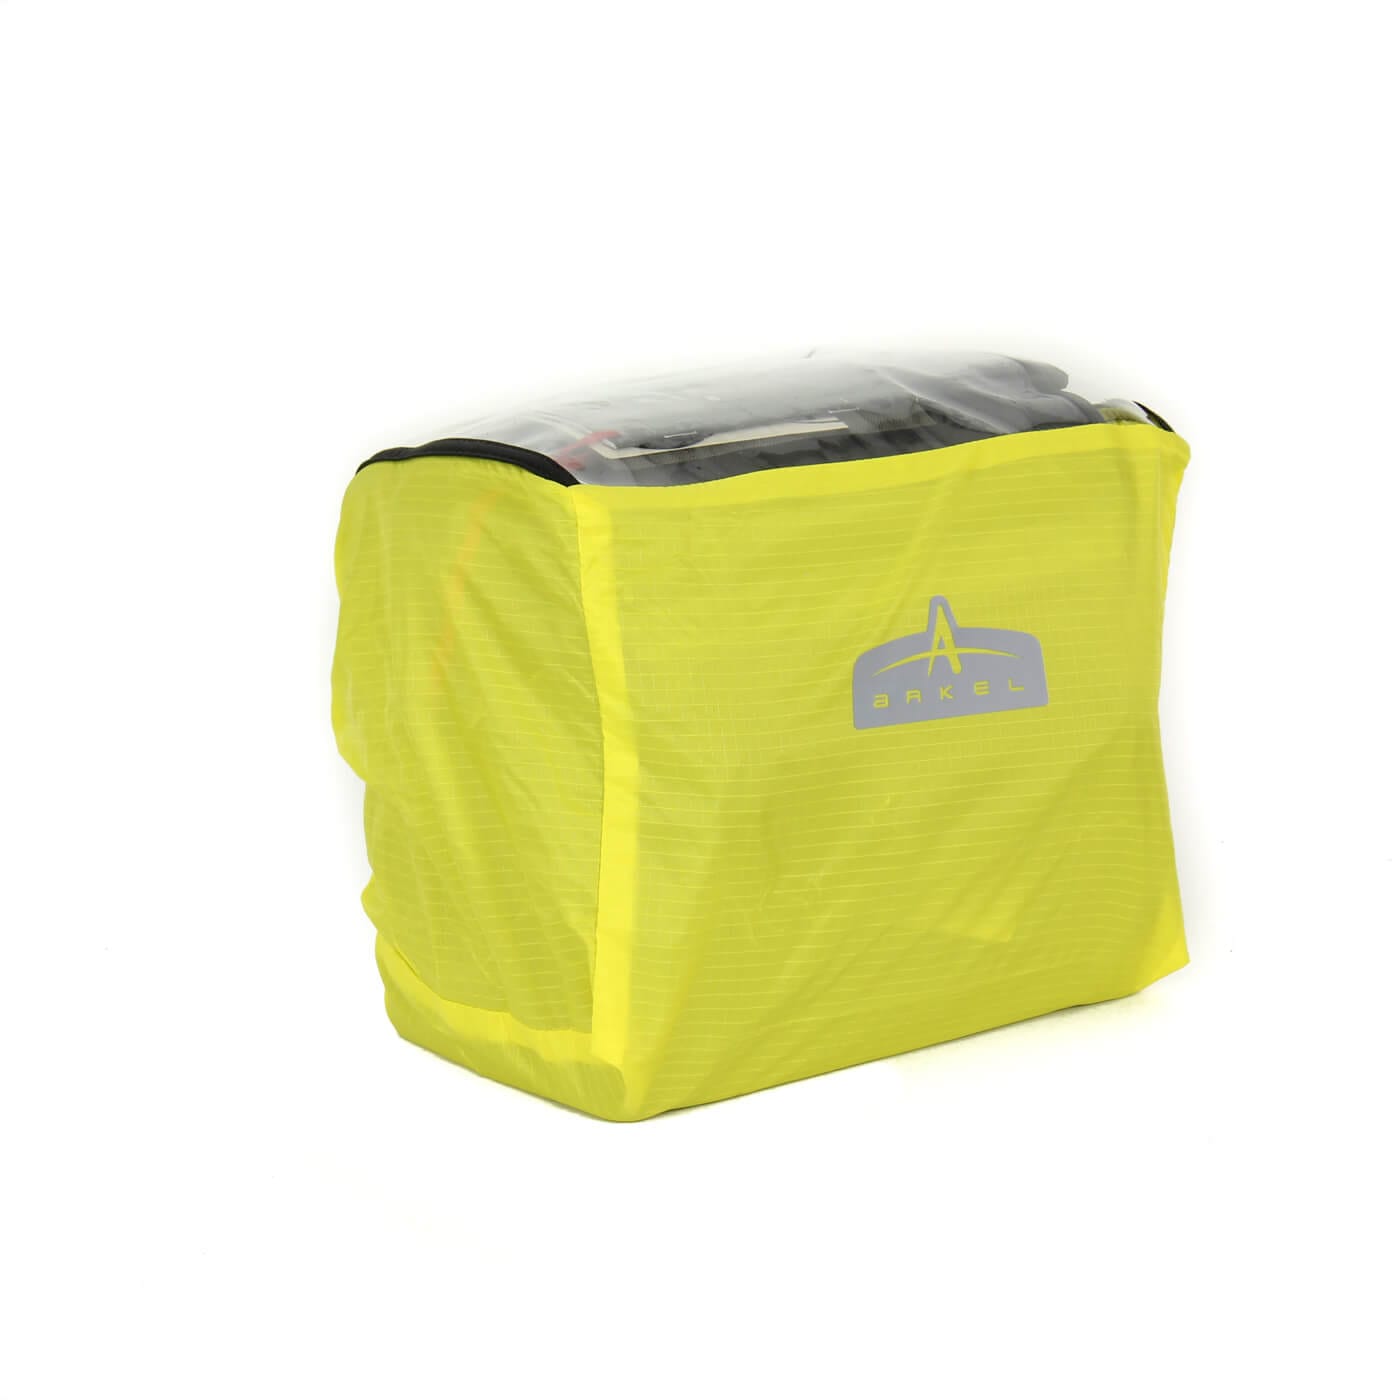 Arkel Frame Bags - 100% waterproof – Arkel Bike Bags